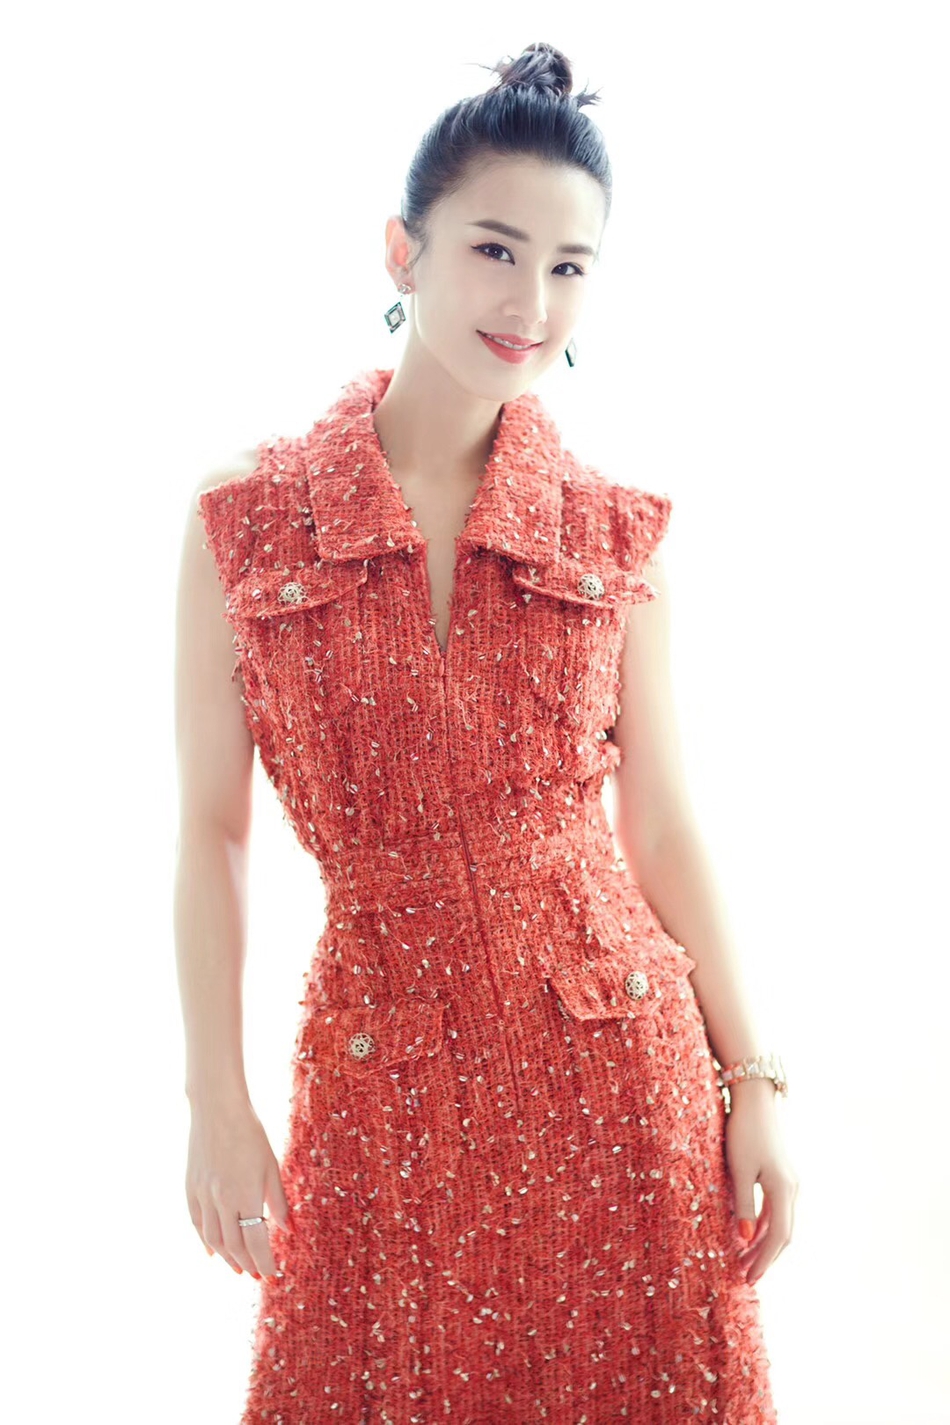 黄圣依时尚写真展招牌笑容 穿红色连衣裙小露香肩